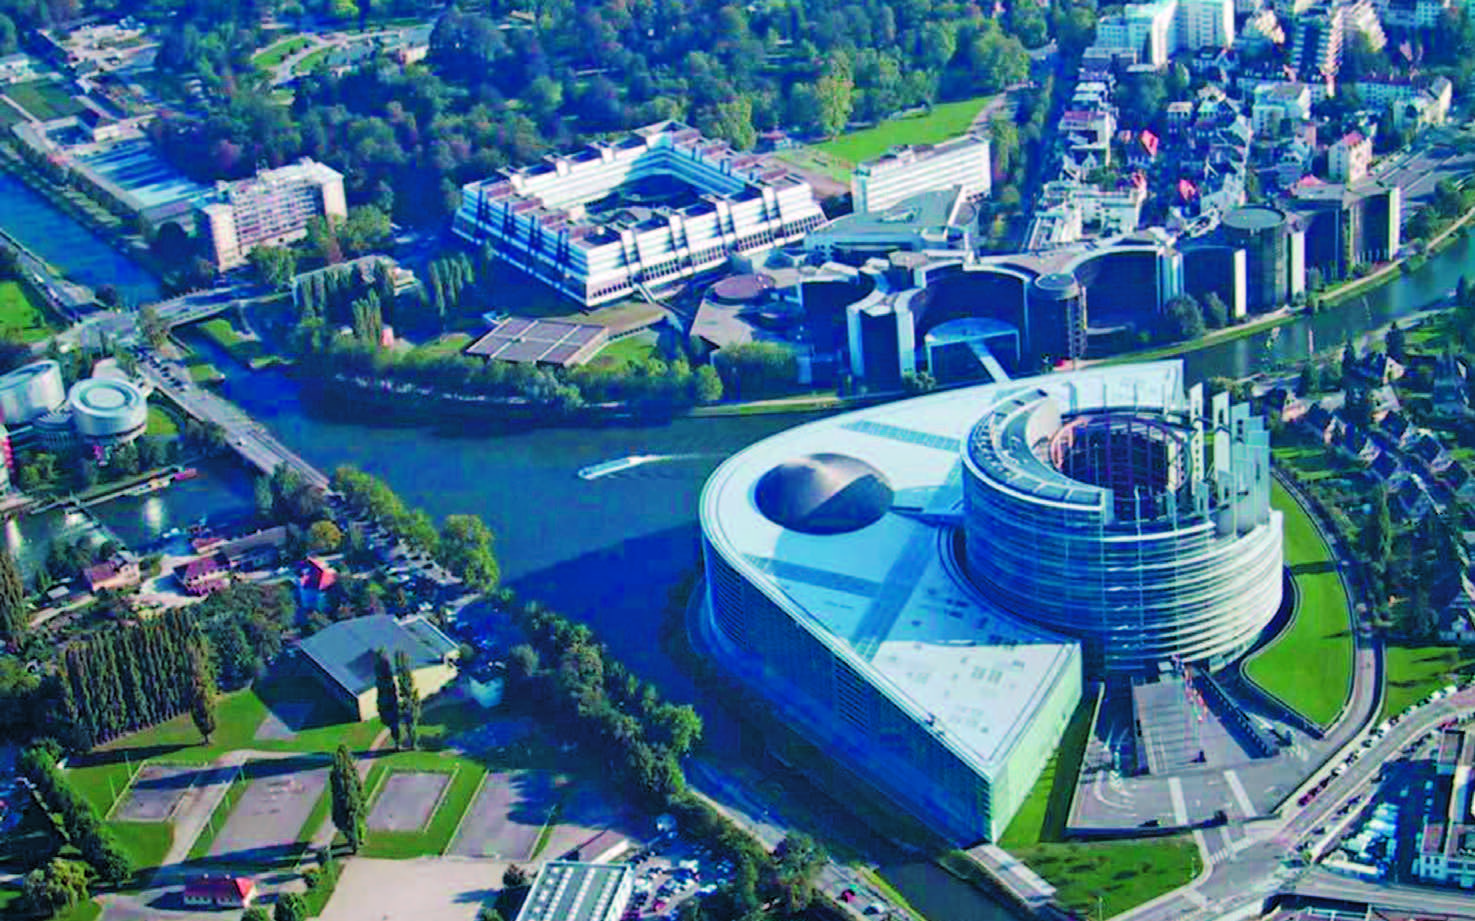 Европейский парламент Страсбург